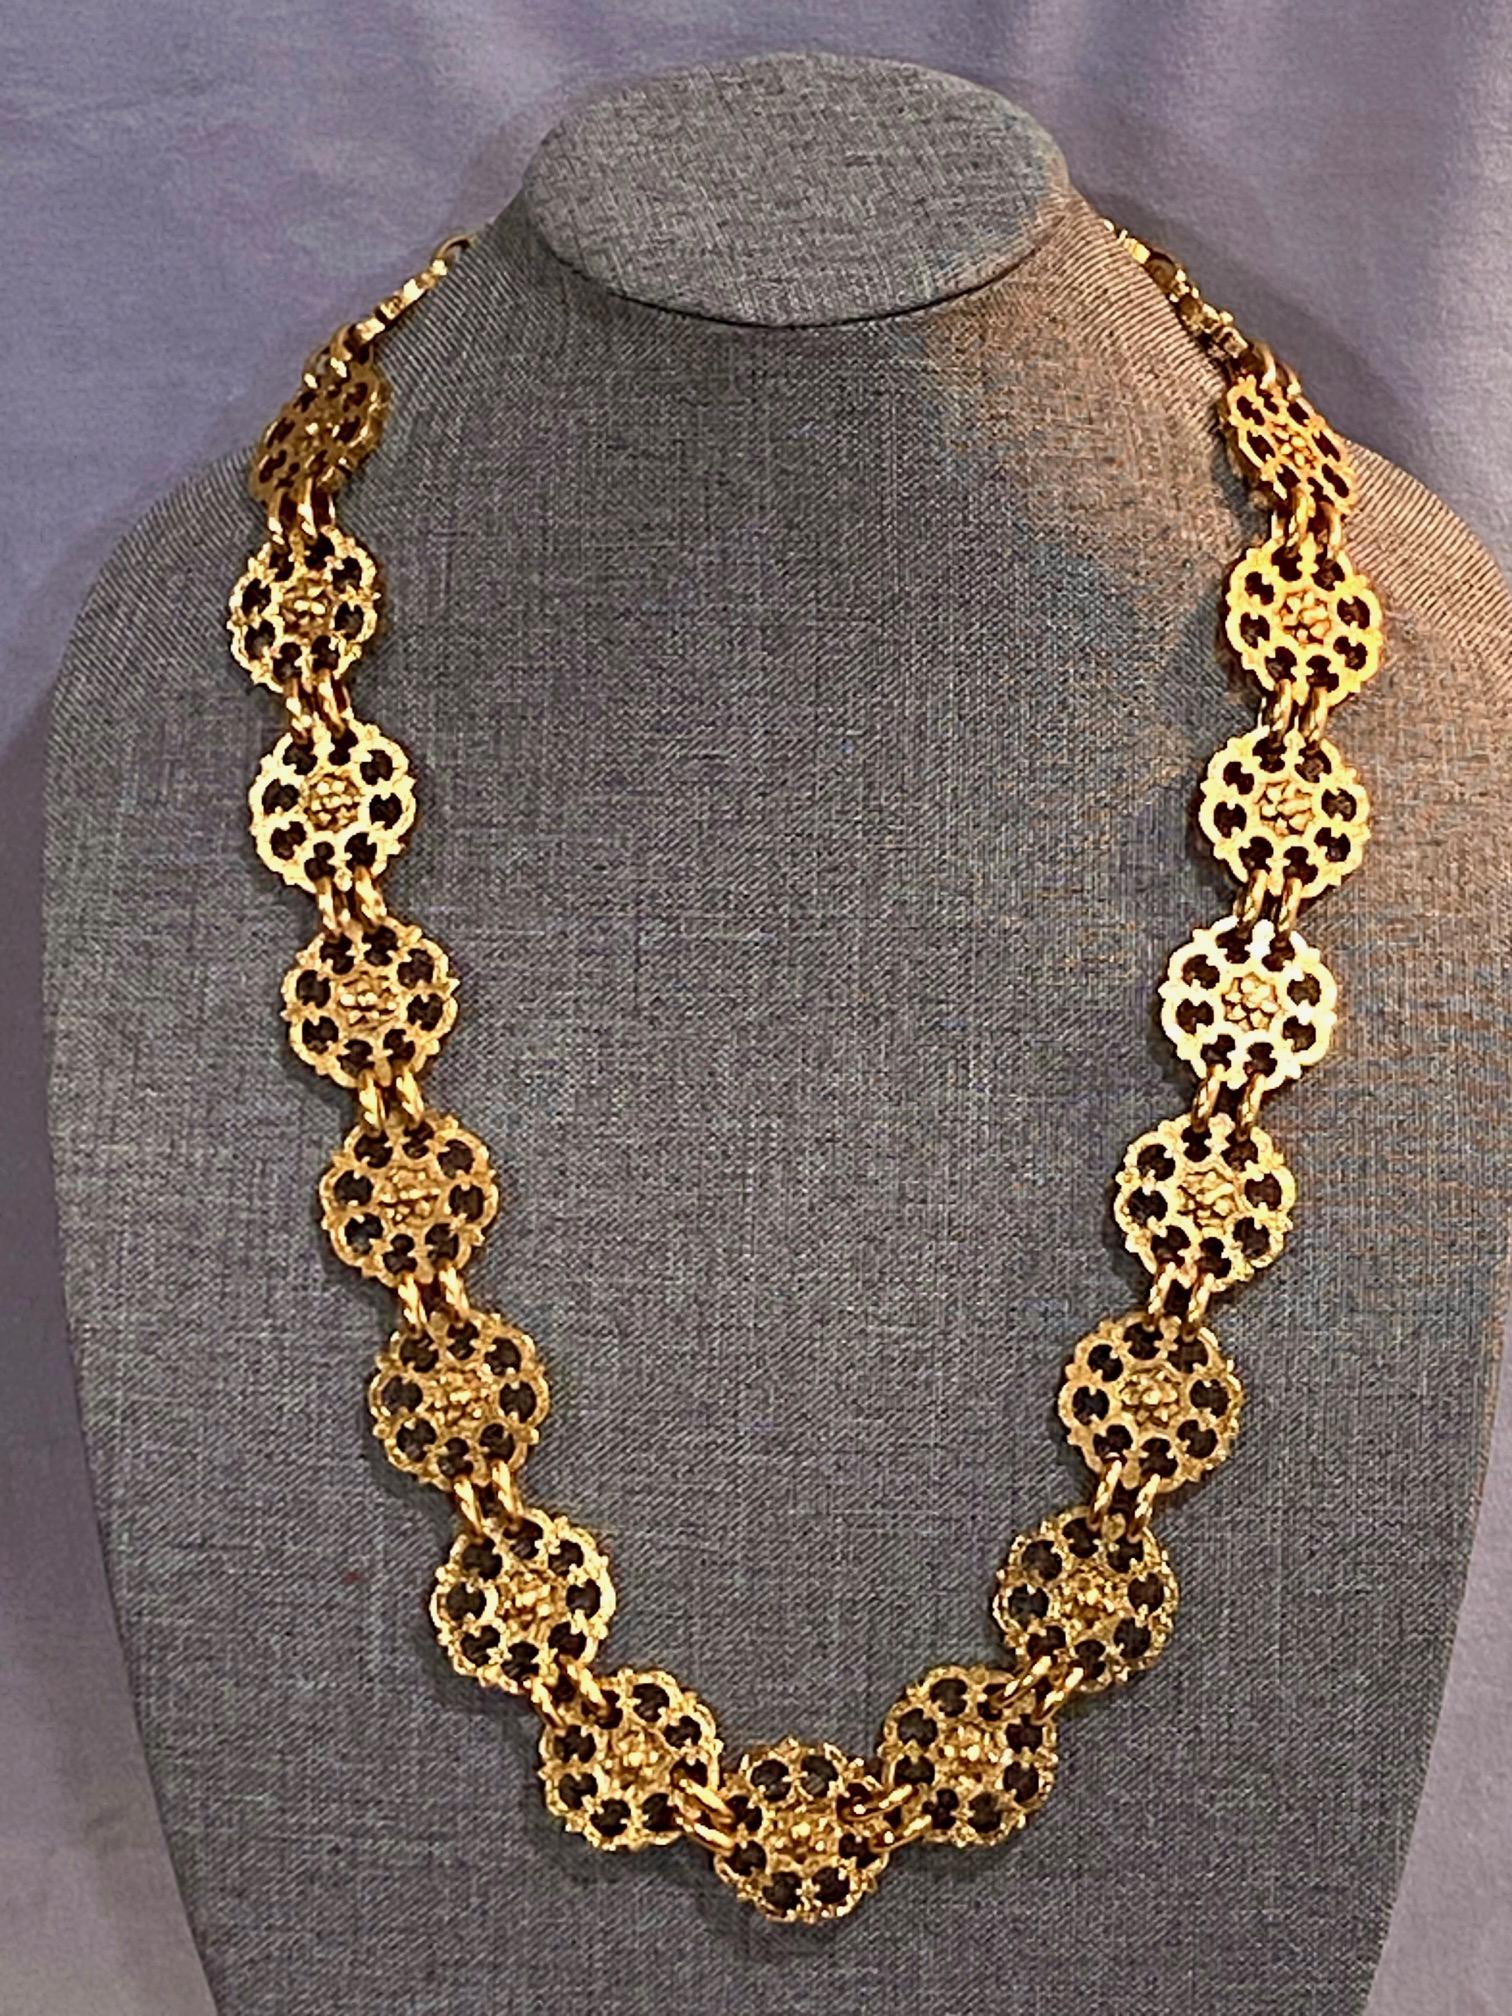 Yves Saint Laurent, Rive Gauche, 1980s Gold Belt / Necklace For Sale 8